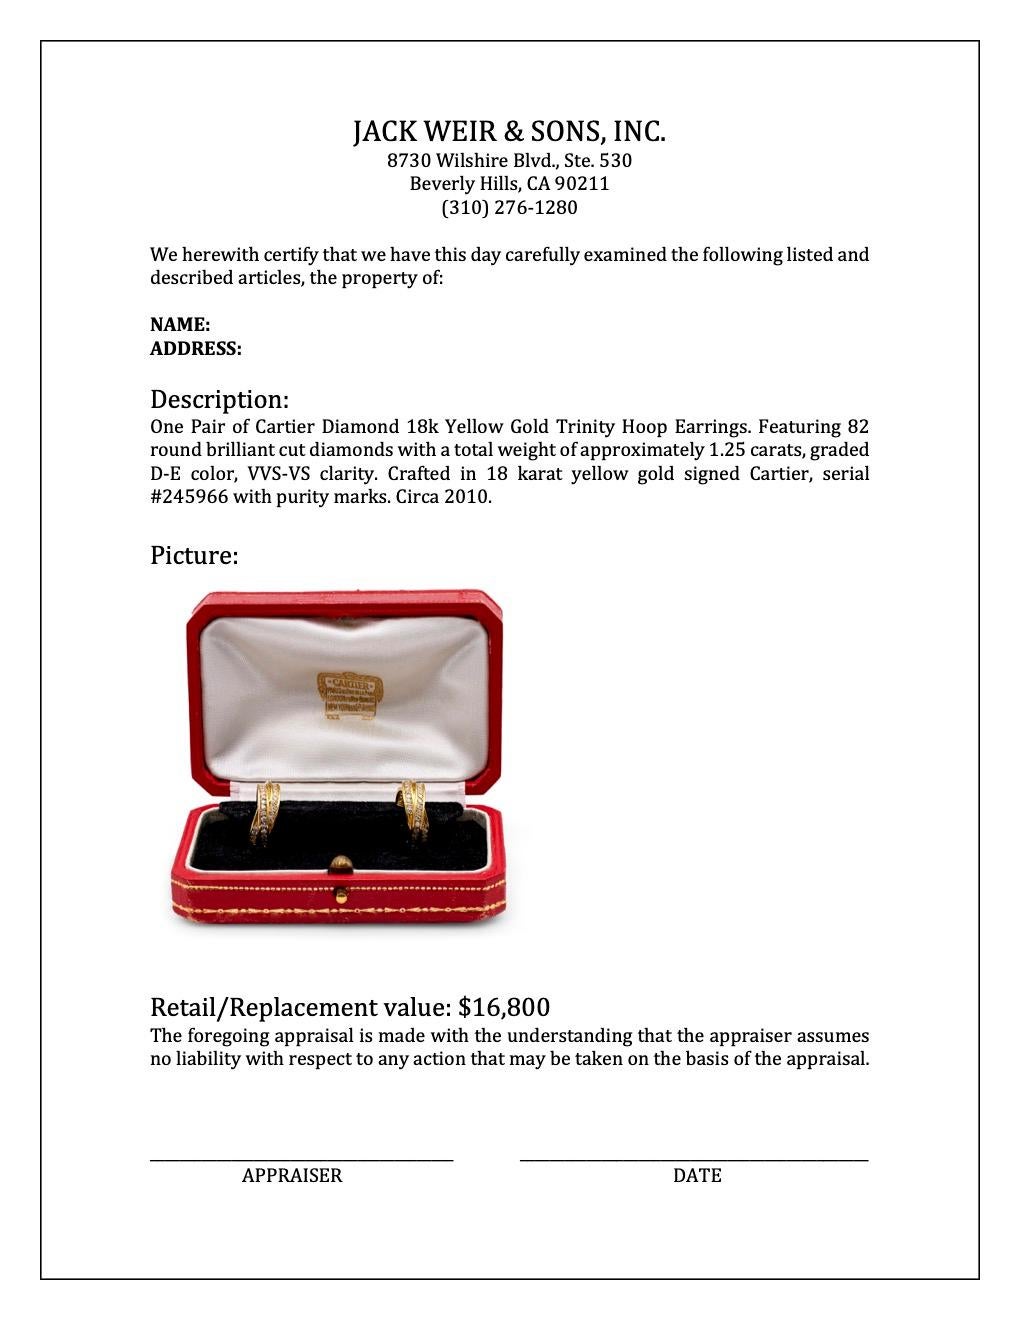 Cartier Diamond 18k Yellow Gold Trinity Hoop Earrings 2